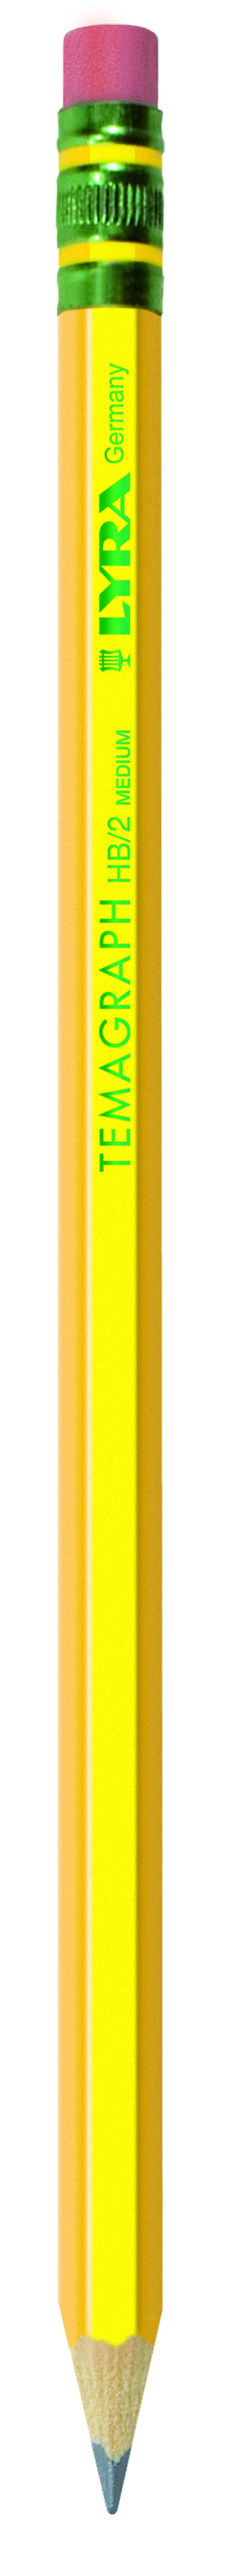 Pieštukas su trintuku TEMAGRAPH HB L1150100 LYRA/FILA, R05-1124